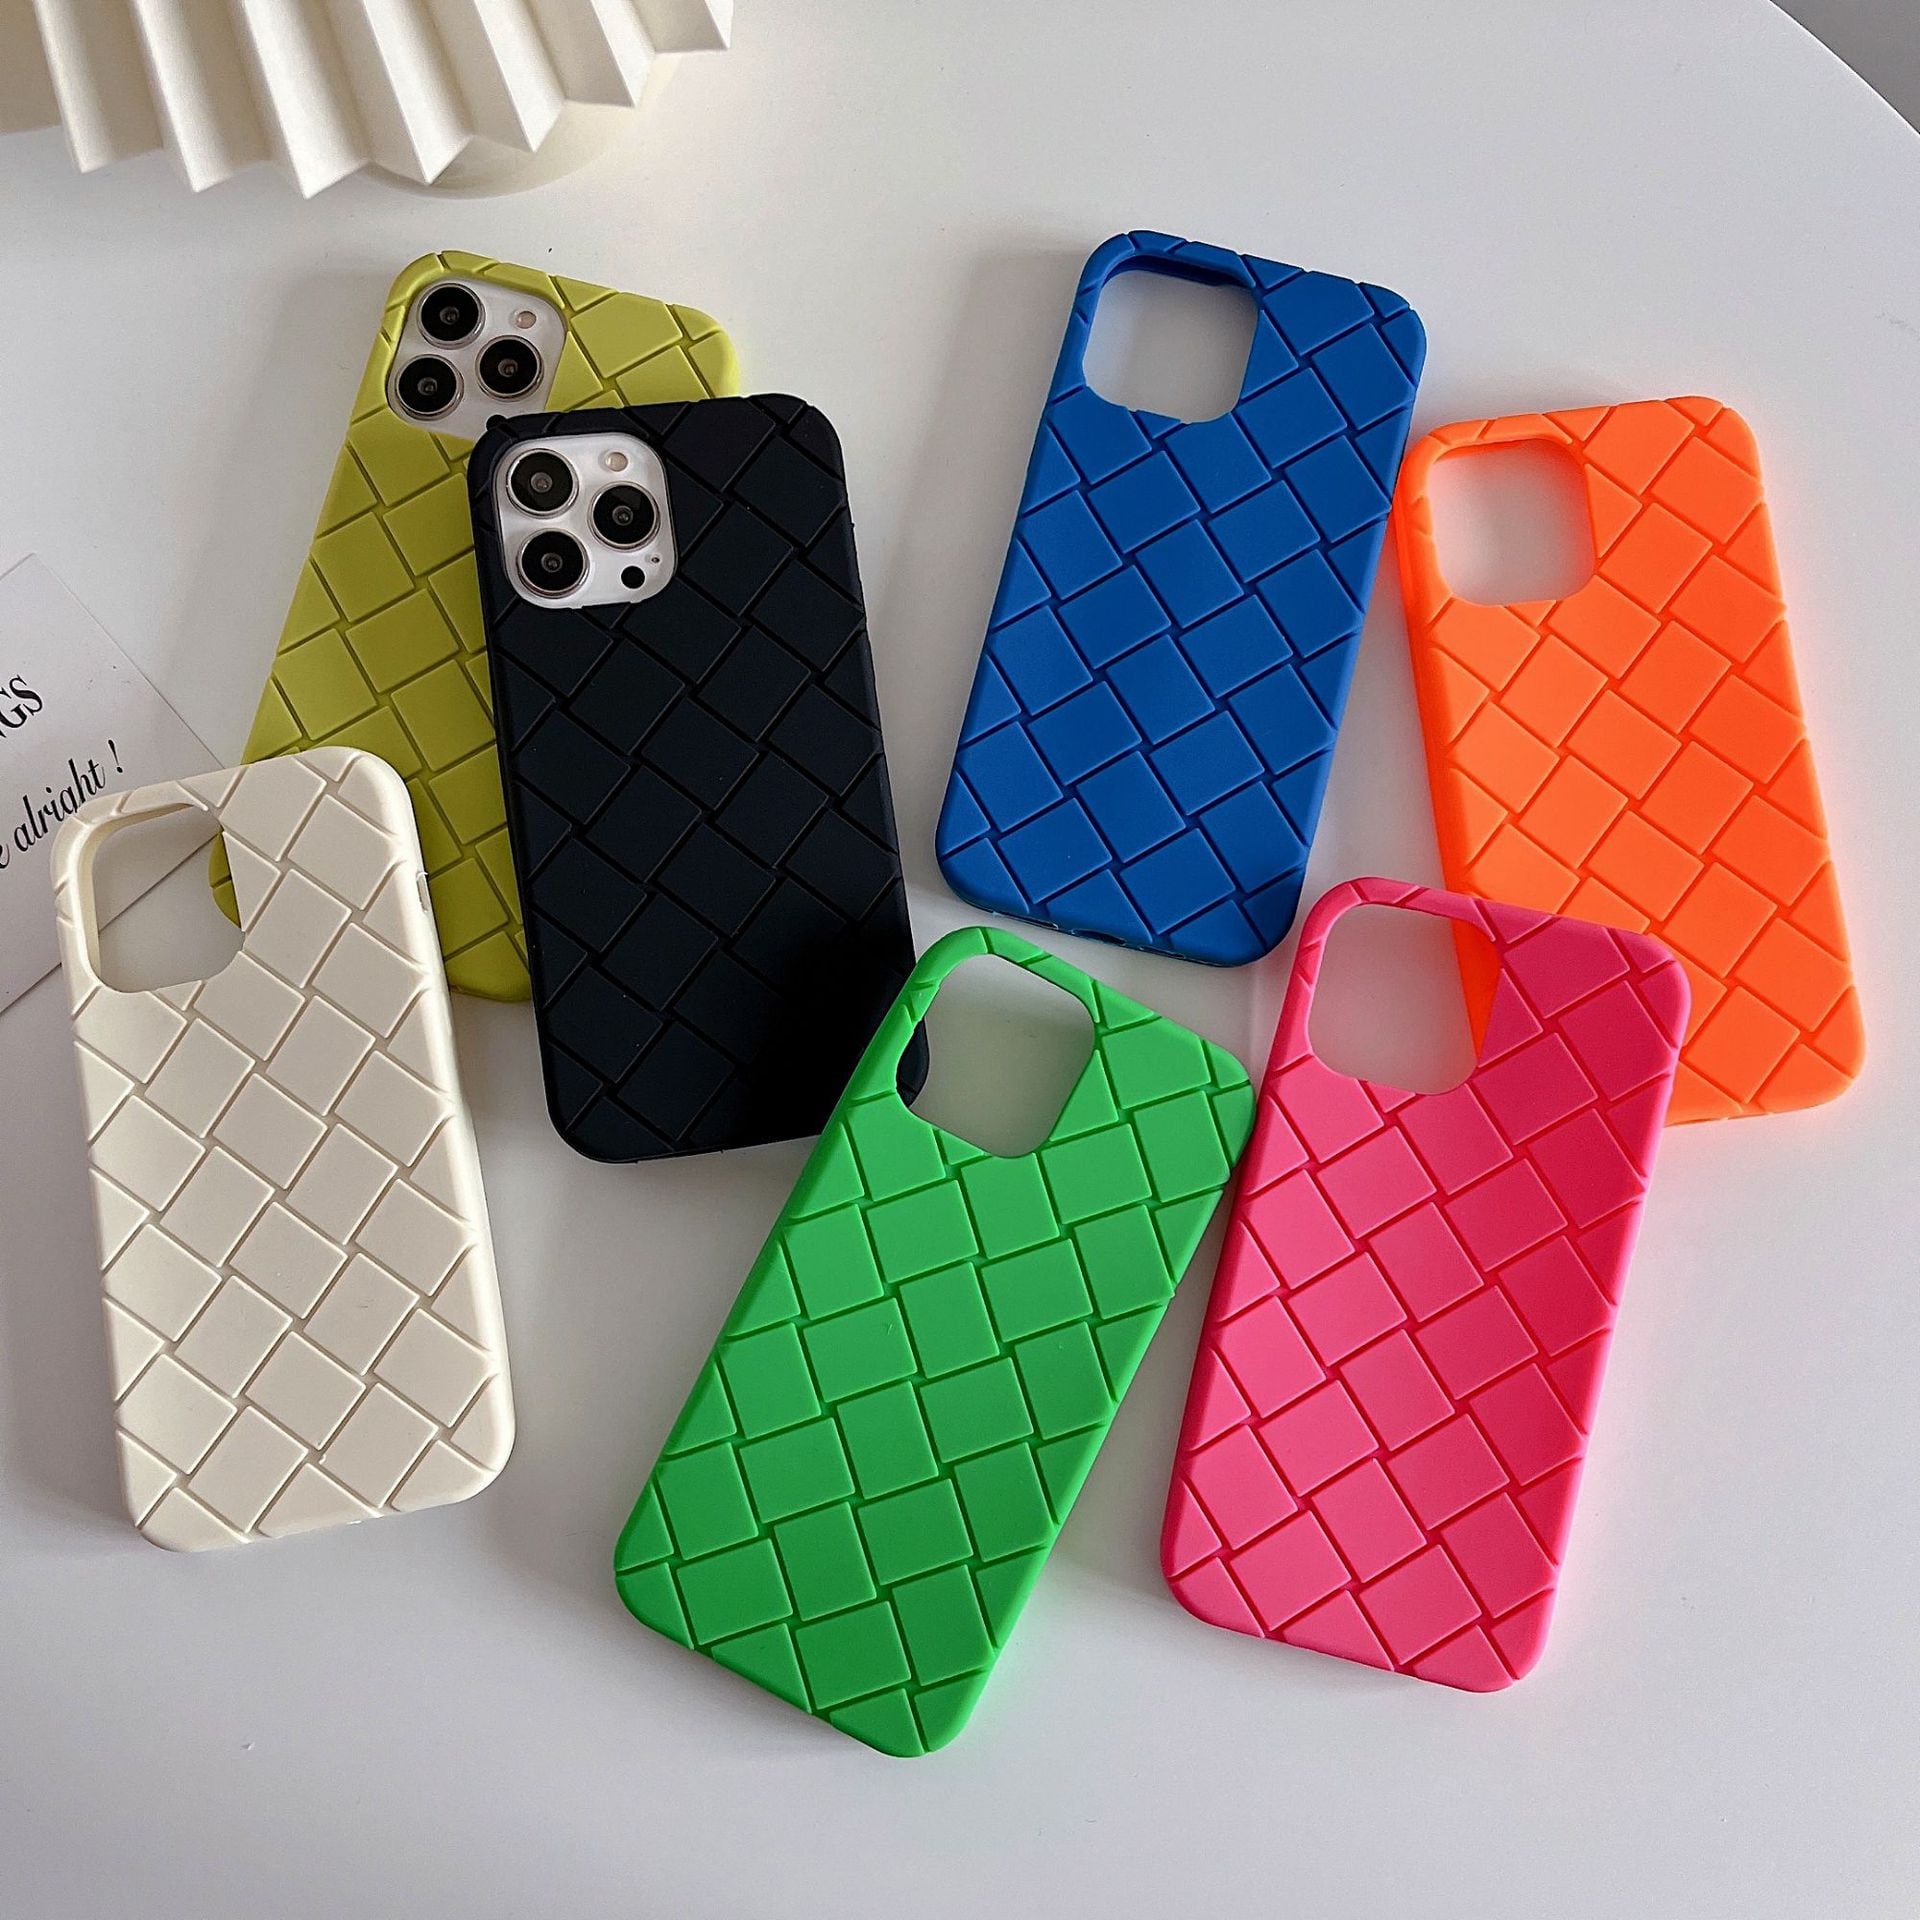 Louis Vuitton Iphone 12 Pro Max Case - Etsy